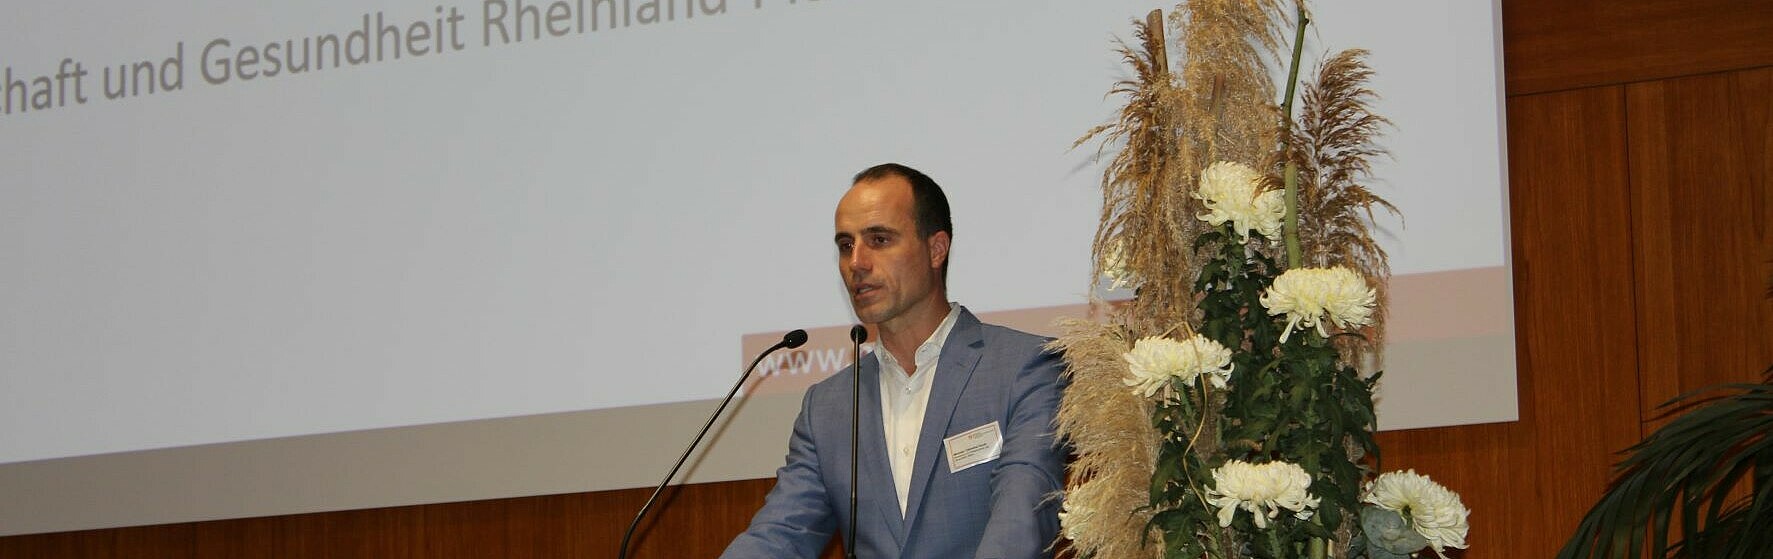 Clemens Hoch, Minister für Wissenschaft und Gesundheit RLP, sprach zum Thema "Upscaling the BioNTech Experience". (Bild: HWG LU)